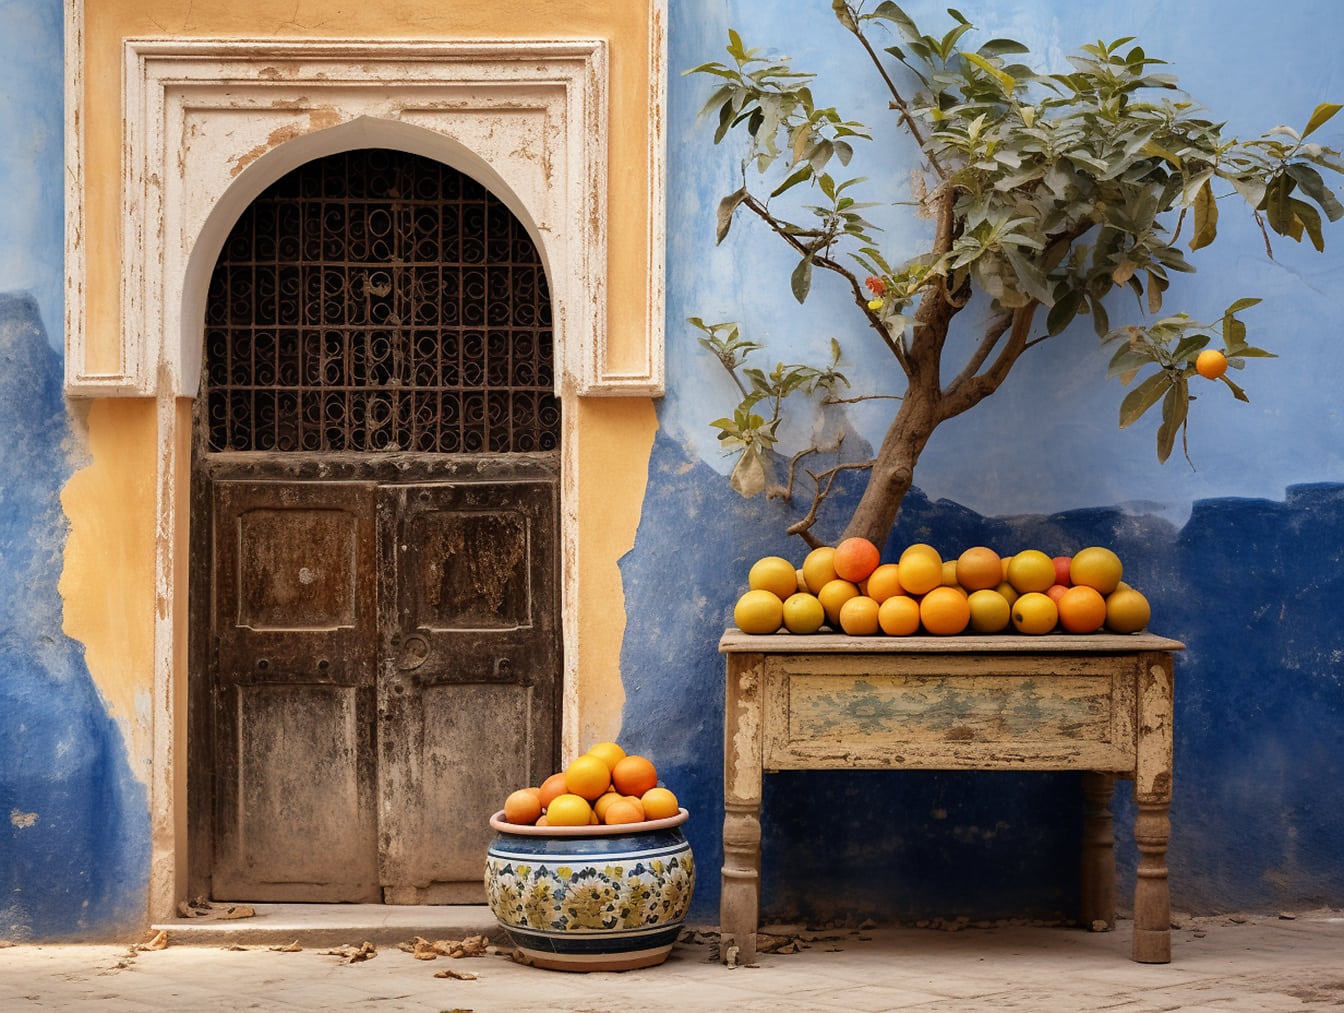 Lijst met sinaasappels voor een blauwe muur in Marokko